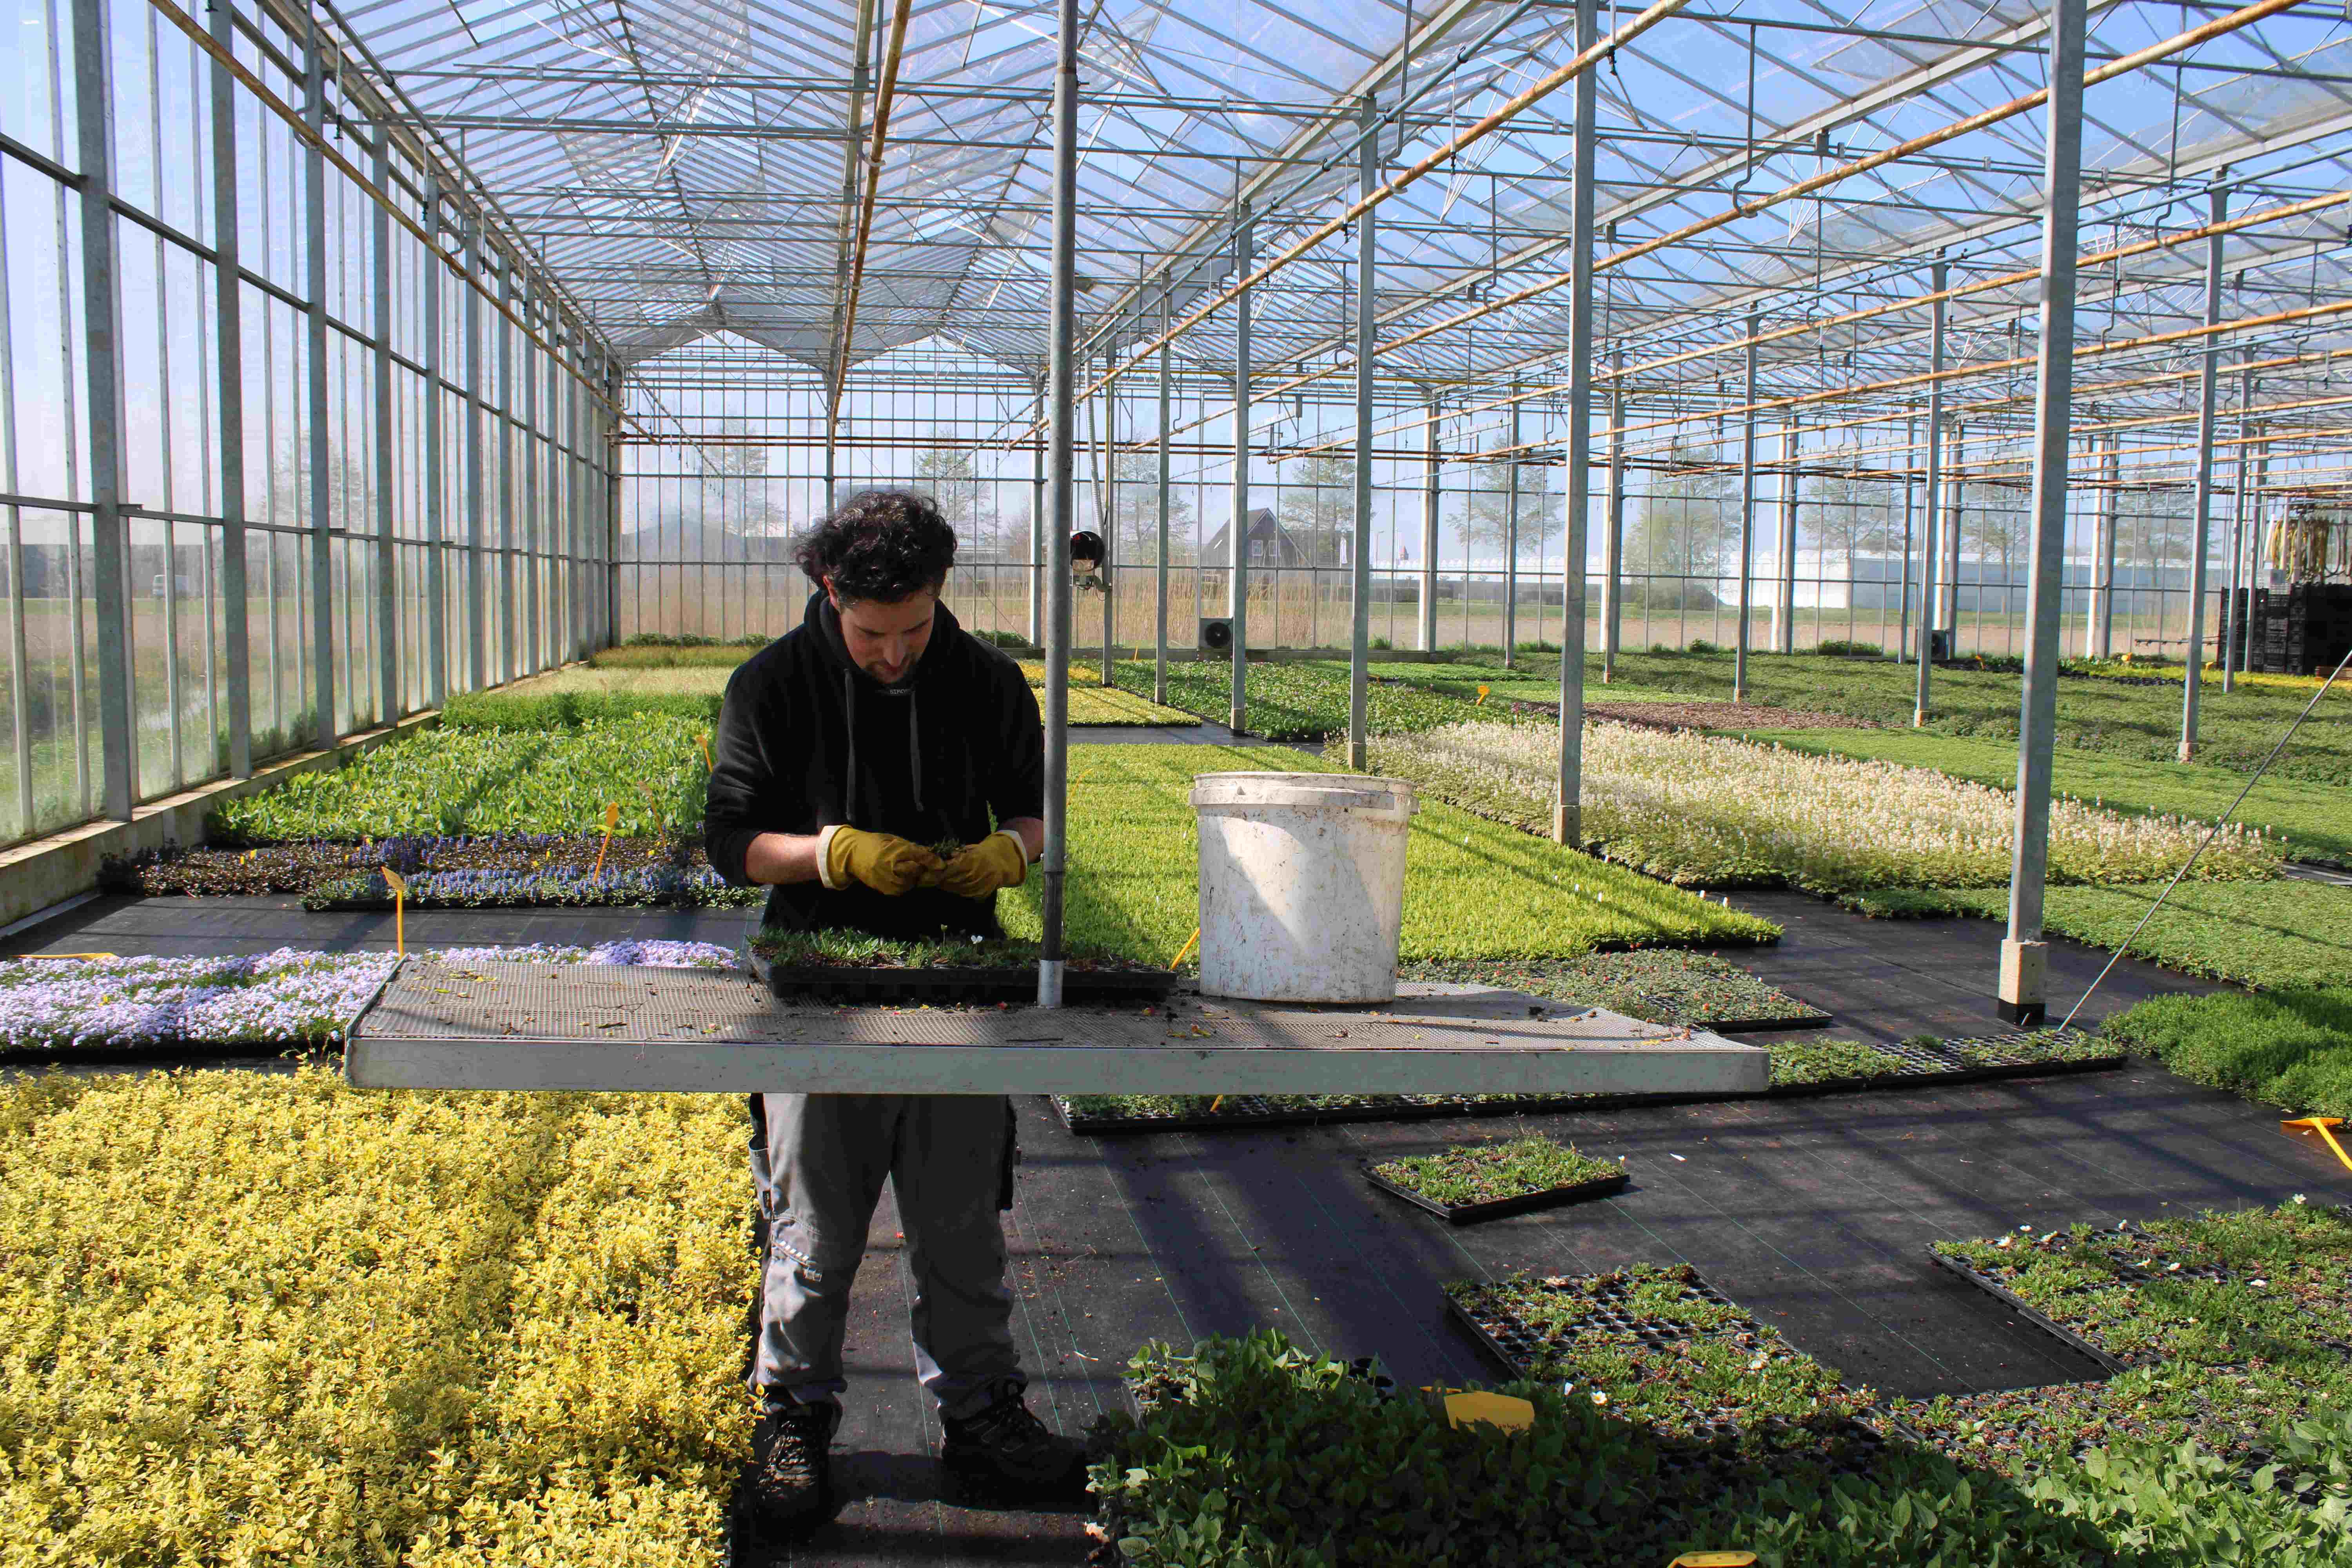 Sempergreen suministra productos de calidad para cubiertas vegetales, jardines verticales y tapizantes de suelos listo para colocar